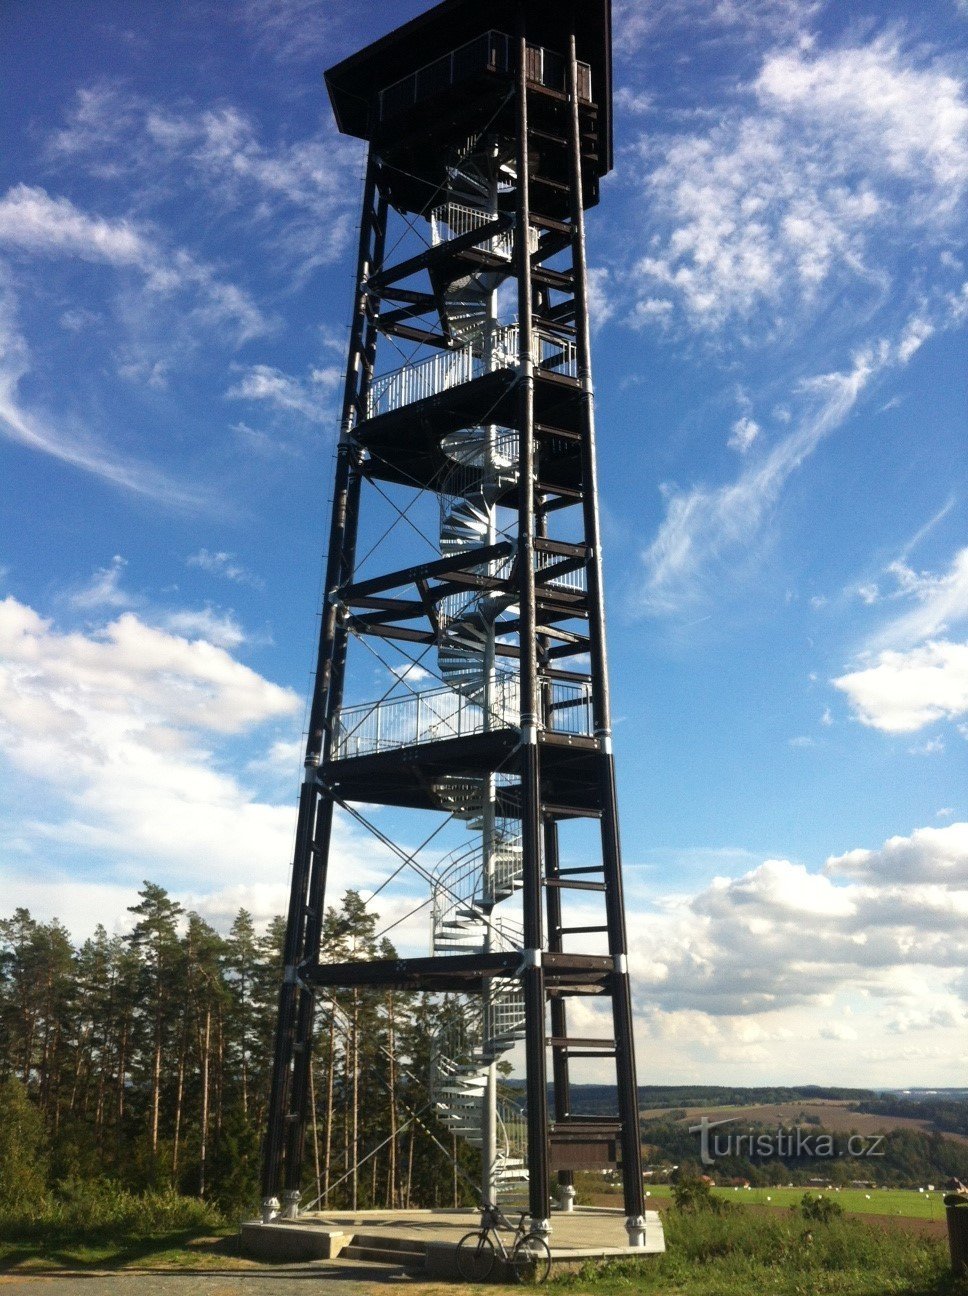 Babka observation tower